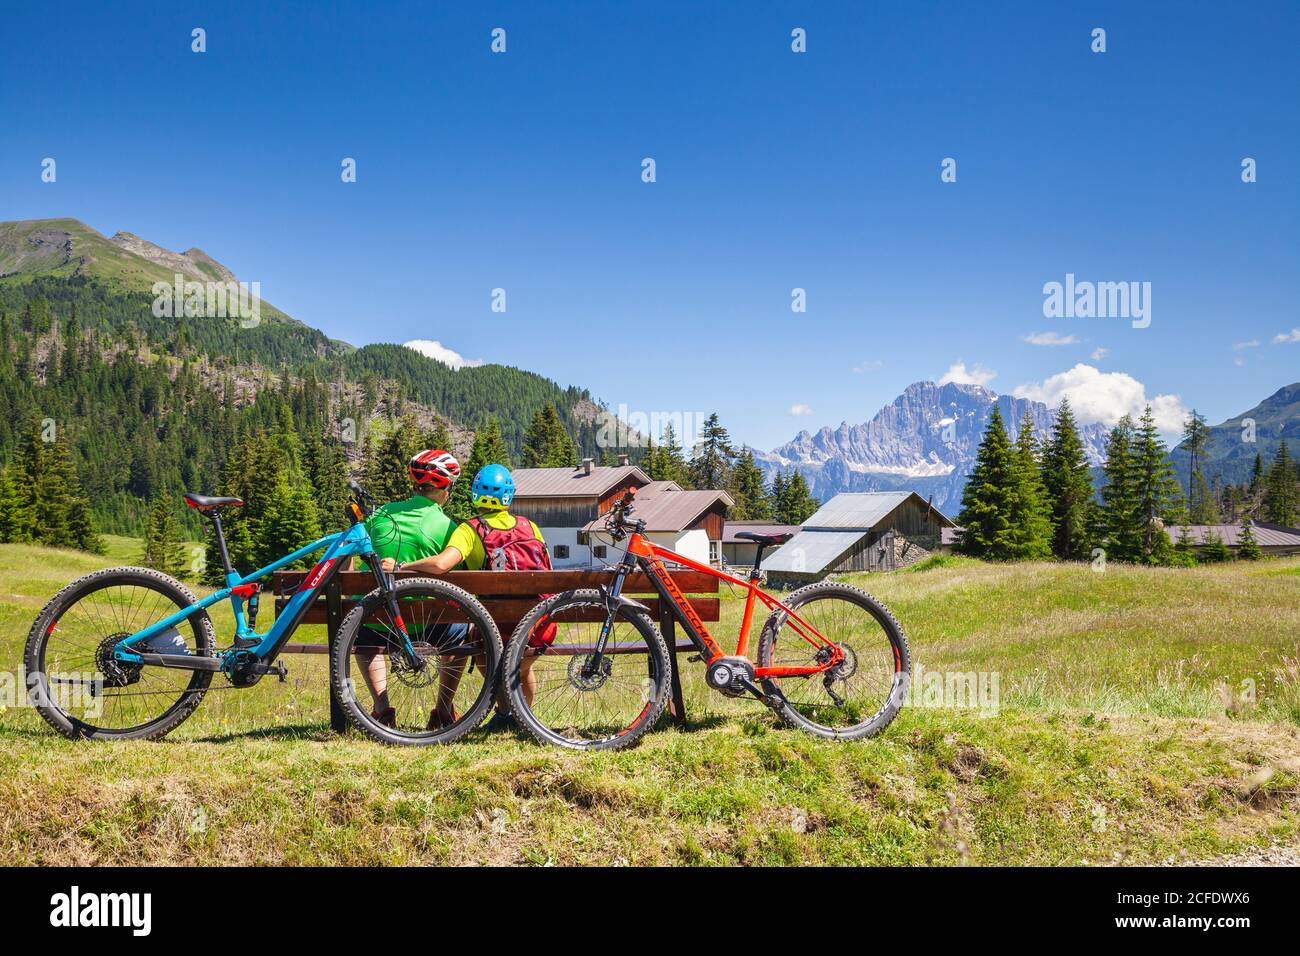 Mann und Frau sitzen auf einer Bank gegenüber dem Civetta Berg bei Cherz alm, Tour mit E-Bike in der Naturlandschaft der Dolomiten, livinallongo del Stockfoto